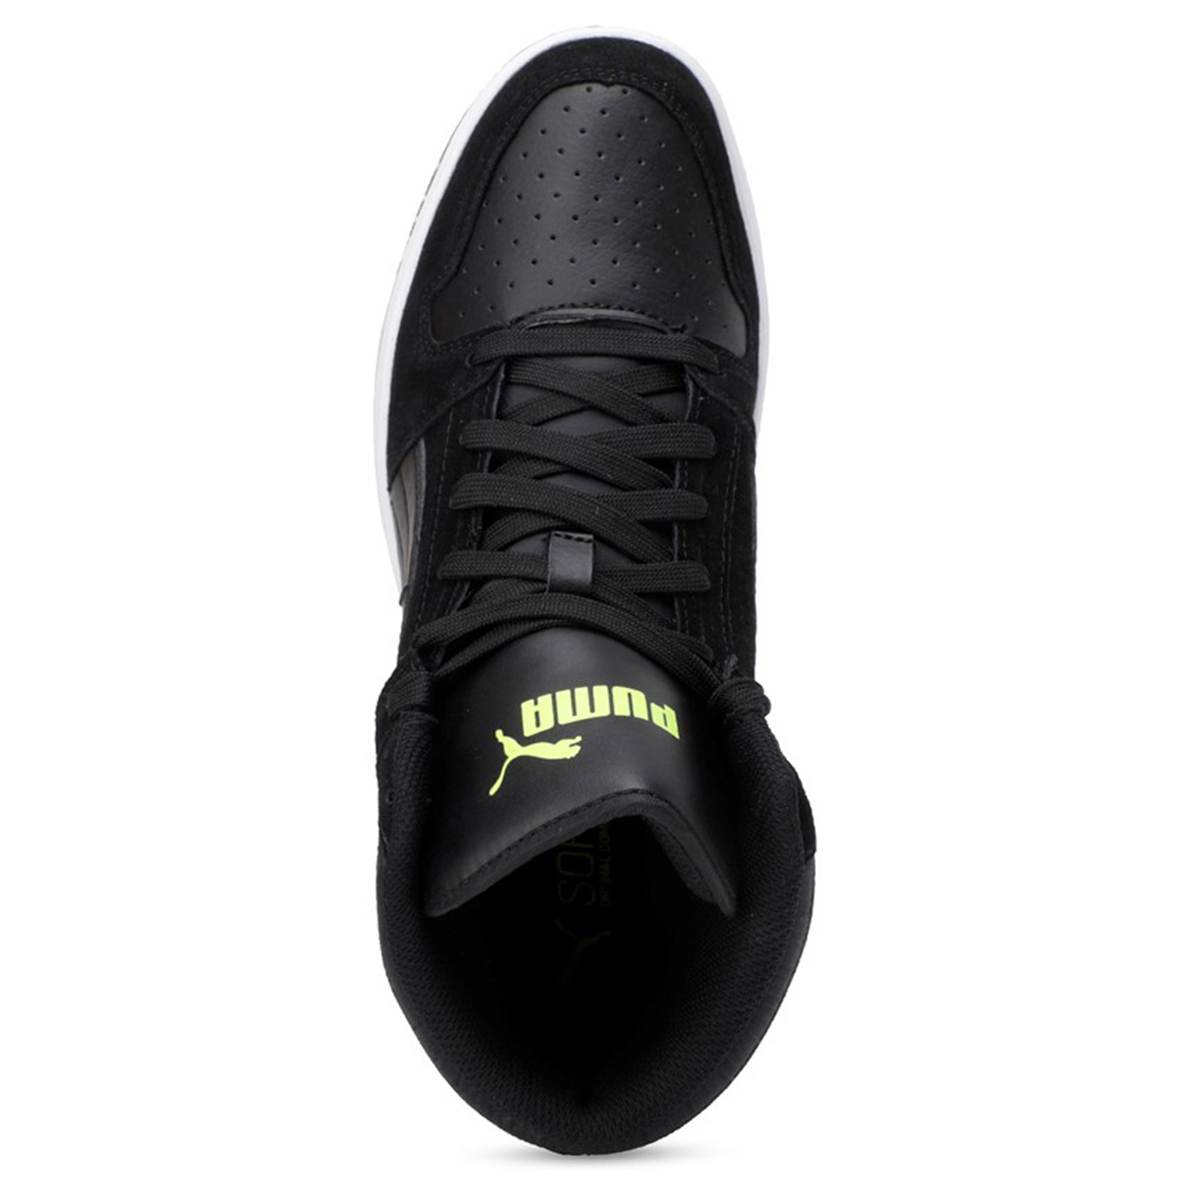 Puma Rebound LayUp SD Hoher Sneaker Stiefel Boots Herren Sneaker 370219